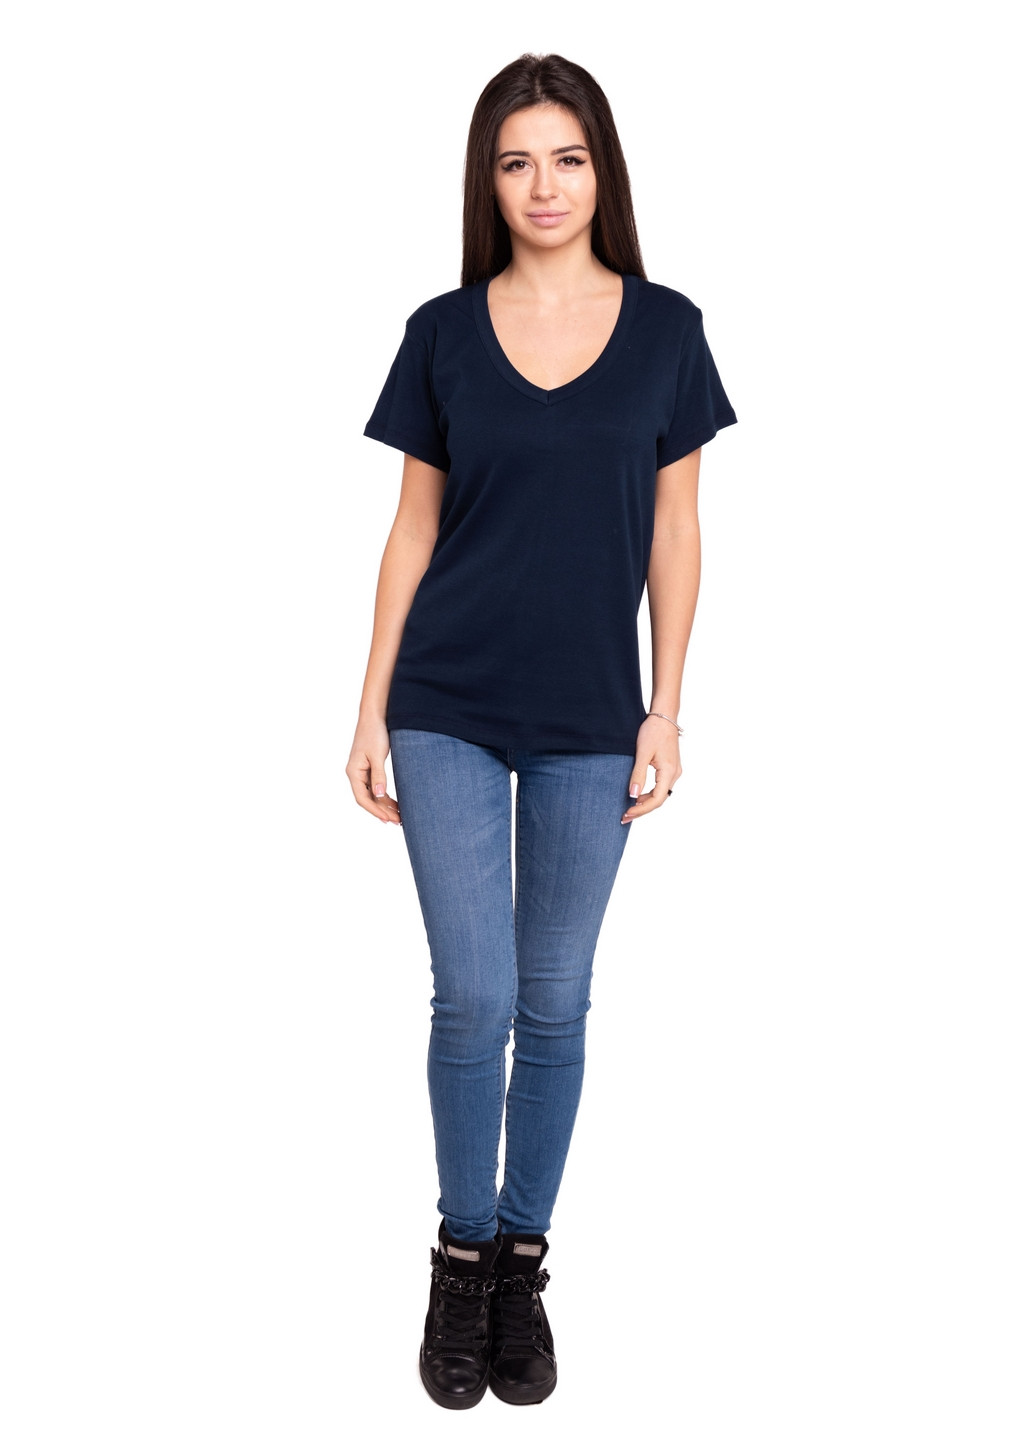 Темно-синяя всесезон футболка женская Наталюкс 21-2369